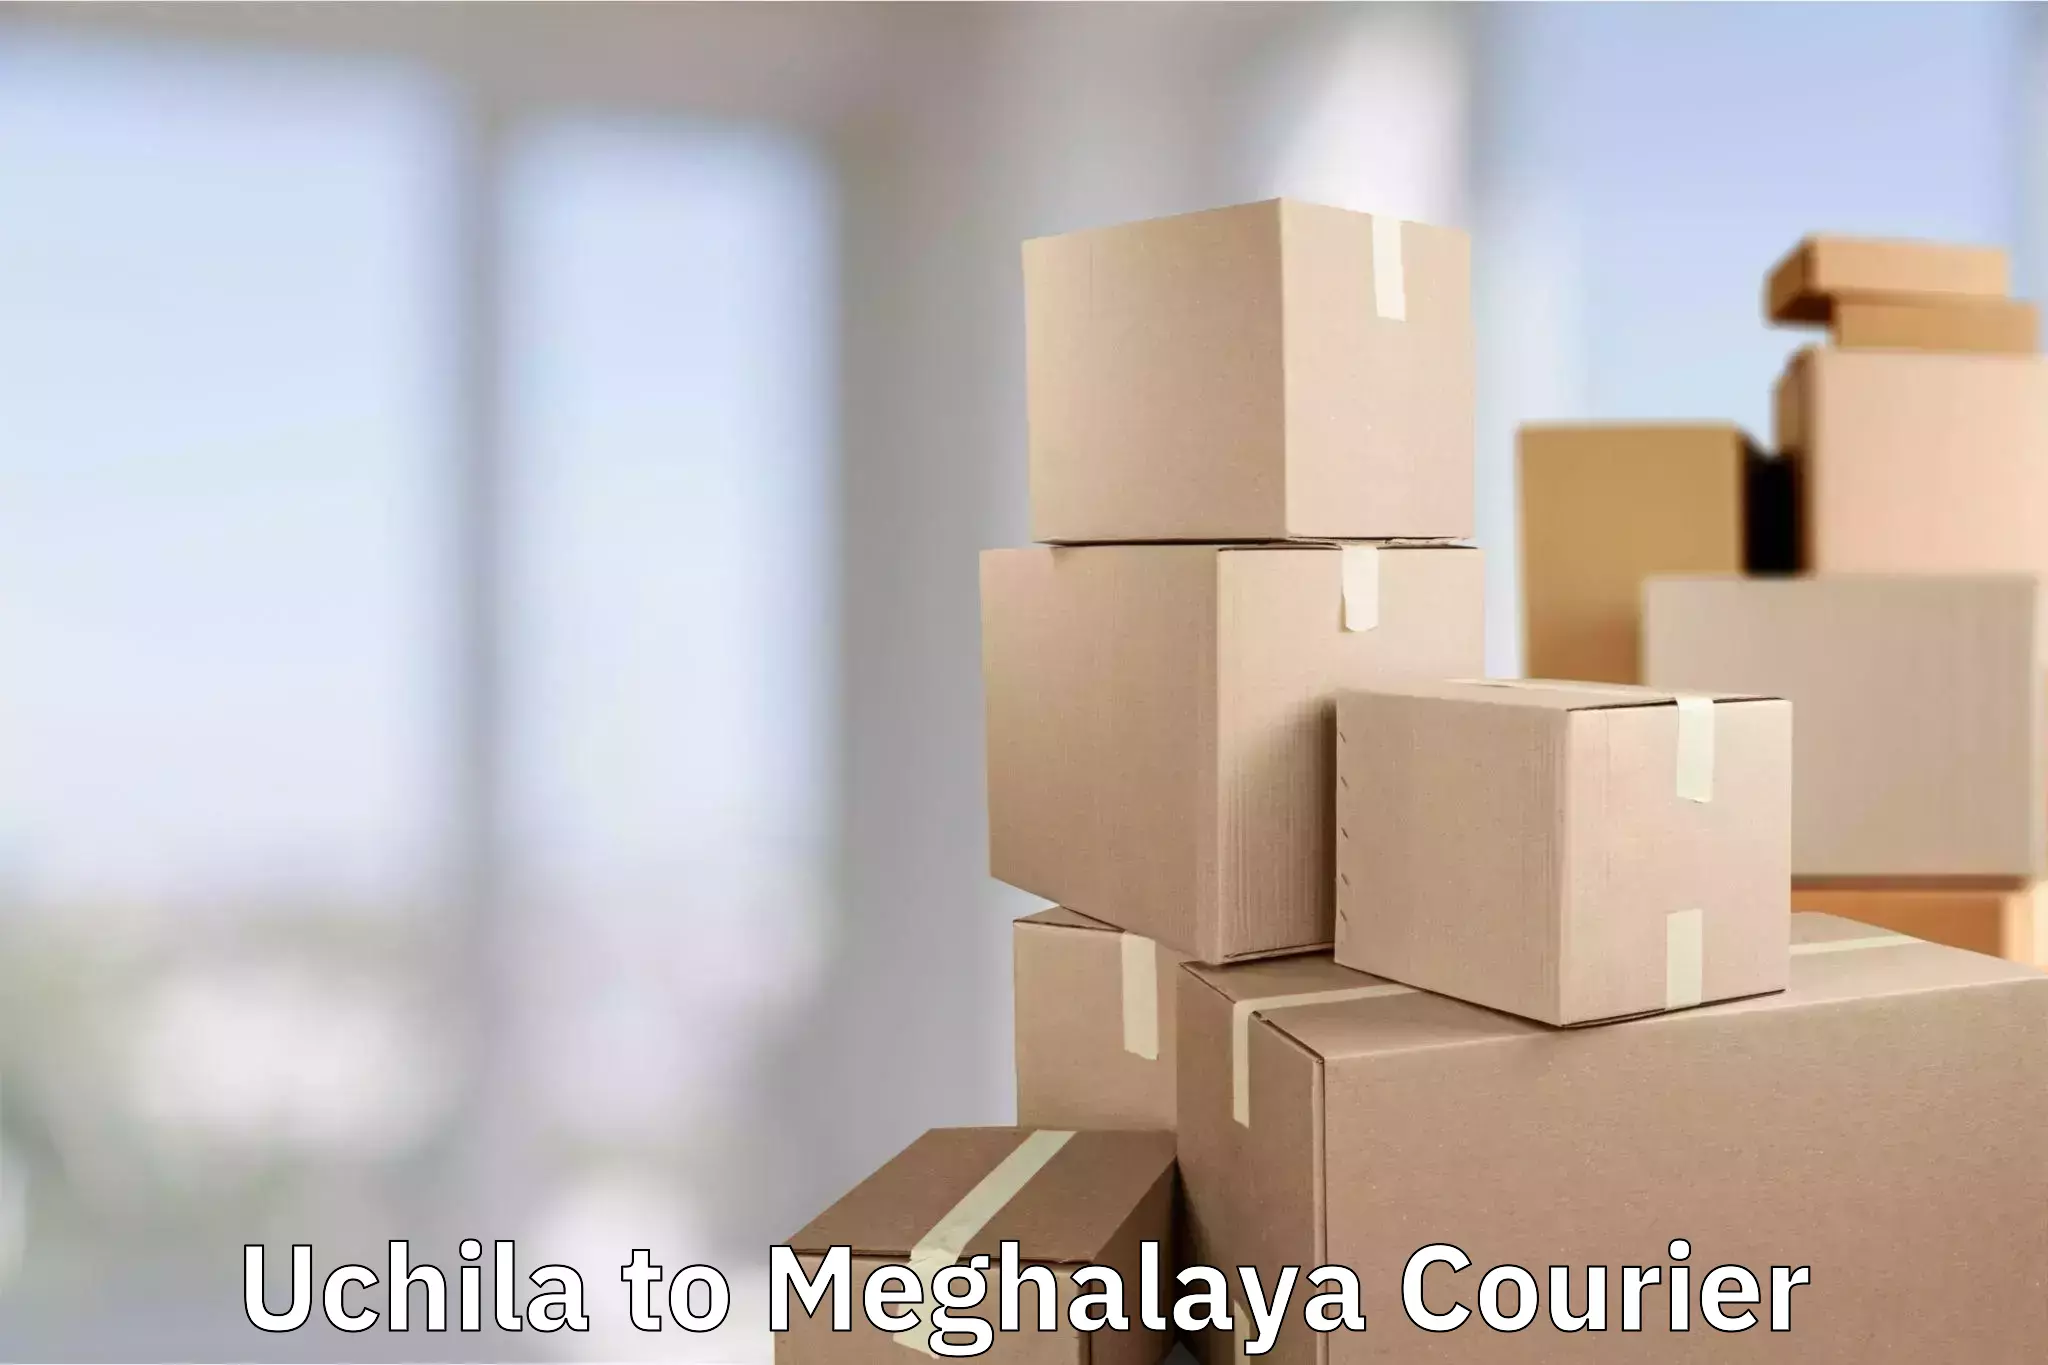 Luggage transport consultancy Uchila to Meghalaya